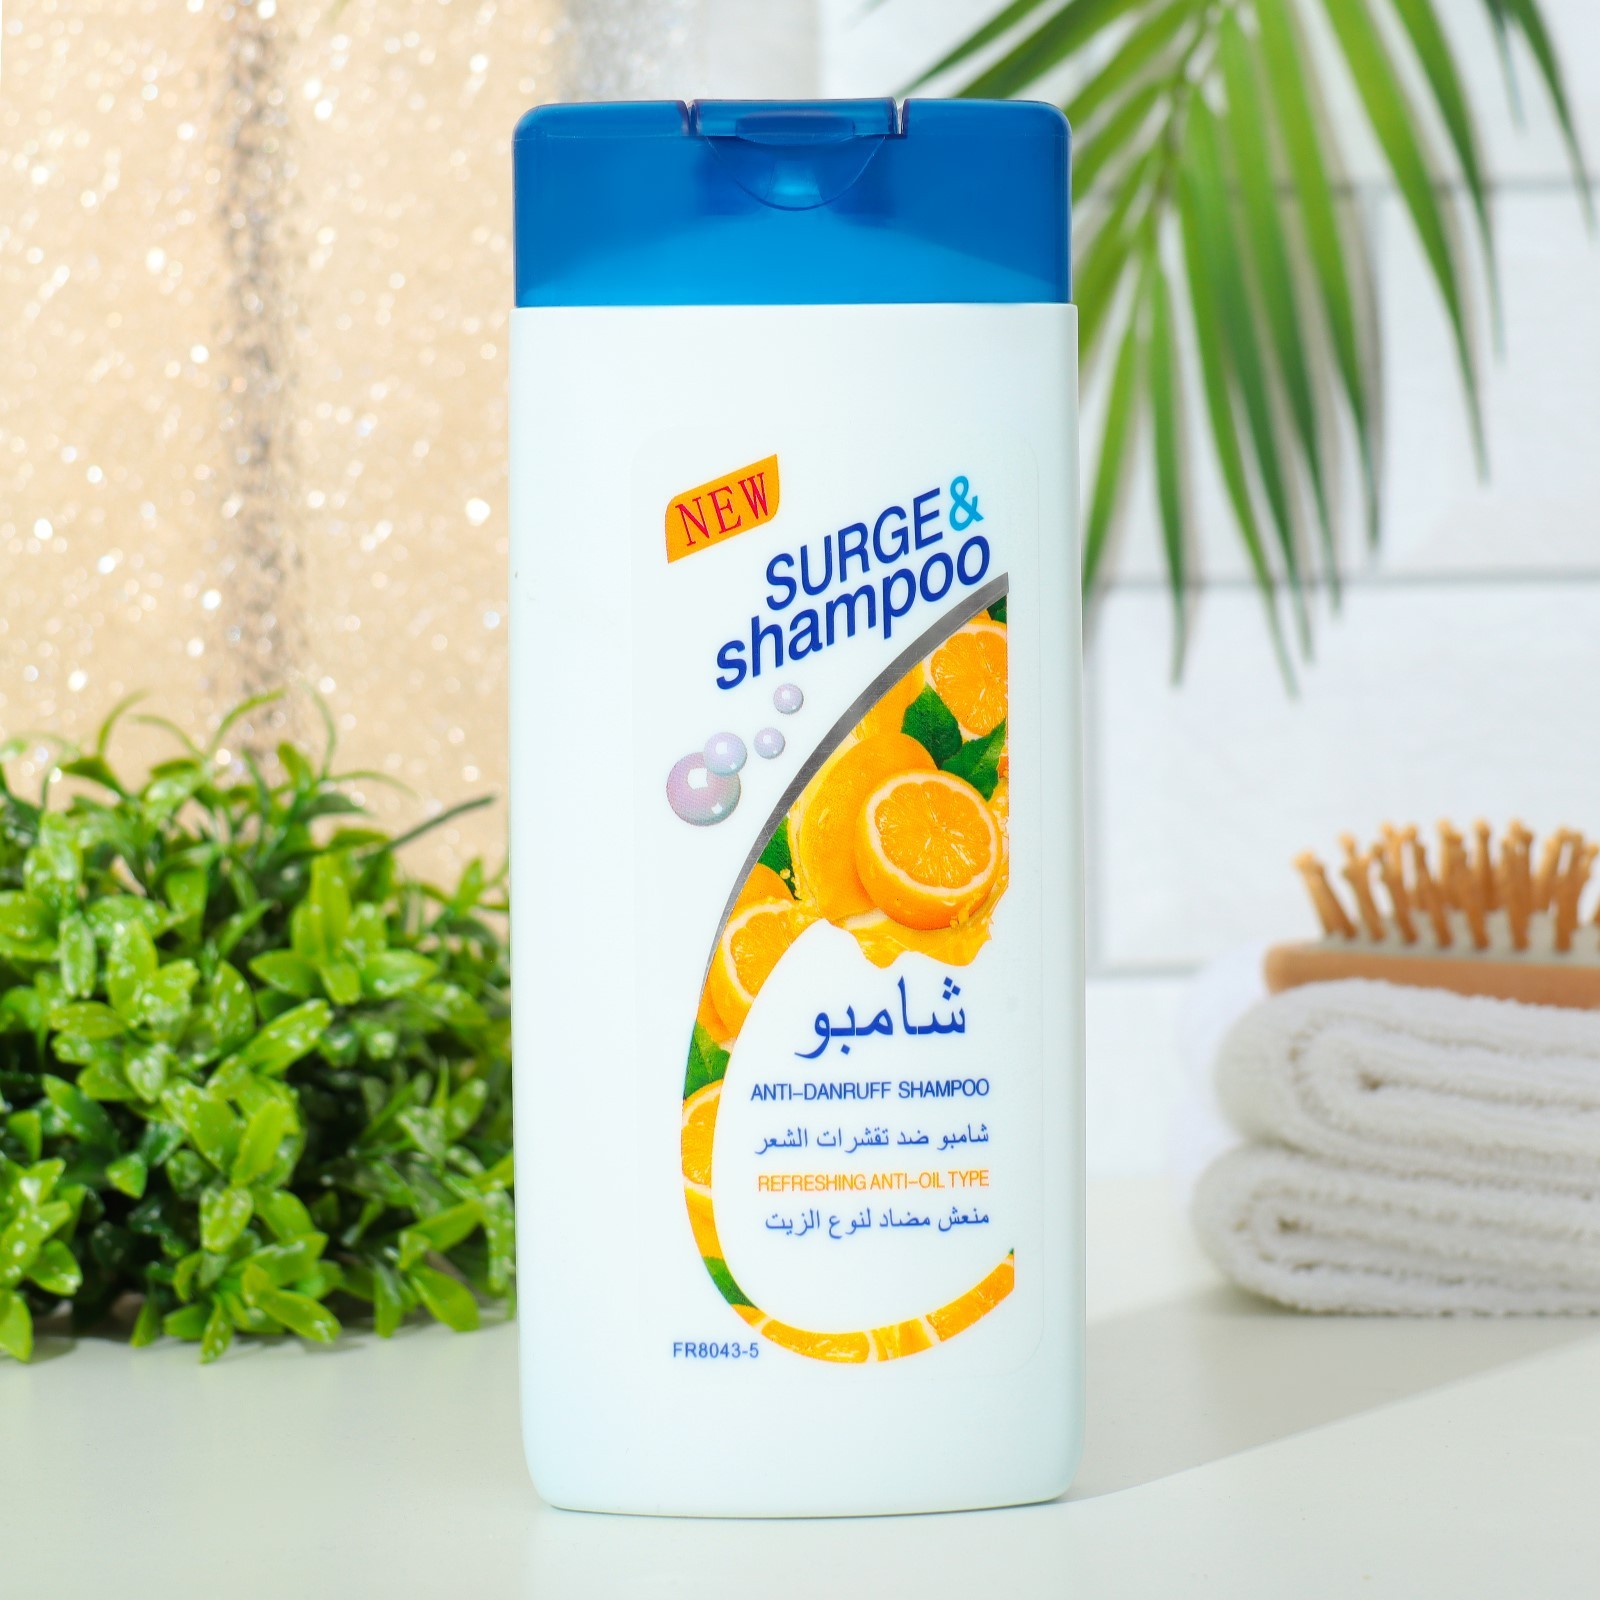 Шампунь Surge&shampoo для волос с лимоном 400 мл ароматизатор delfi aroma toxic летний высококонцентрированный жидкий краб 250 мл